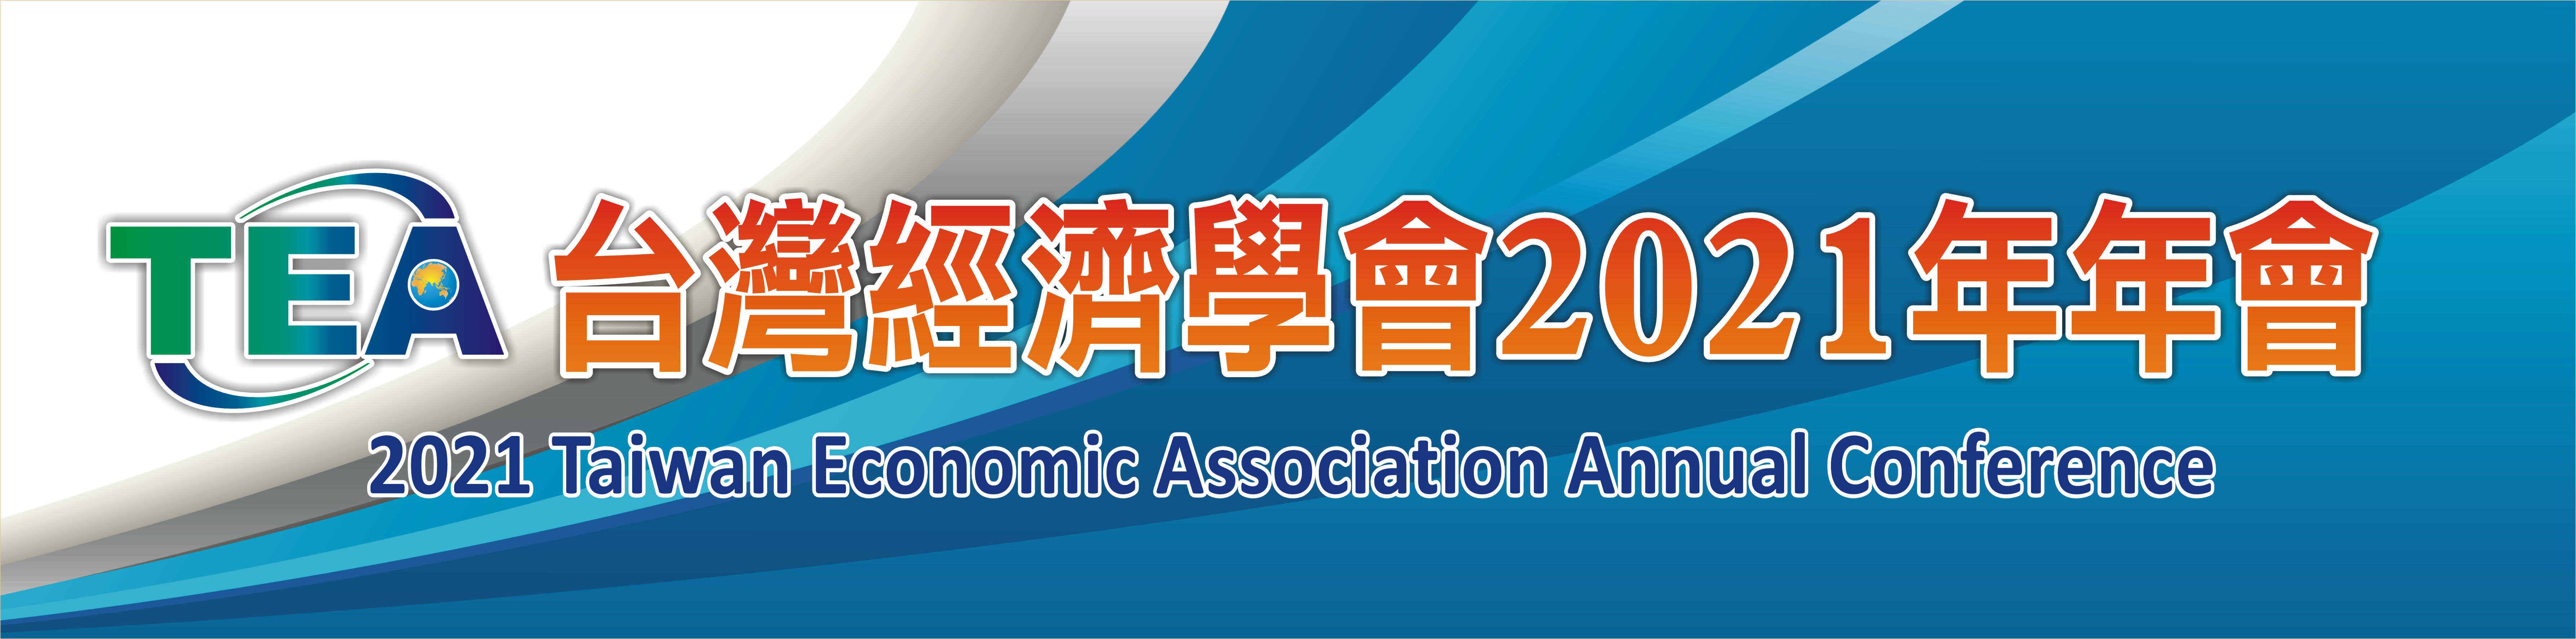 【研討會訊】台灣經濟學會2021年年會